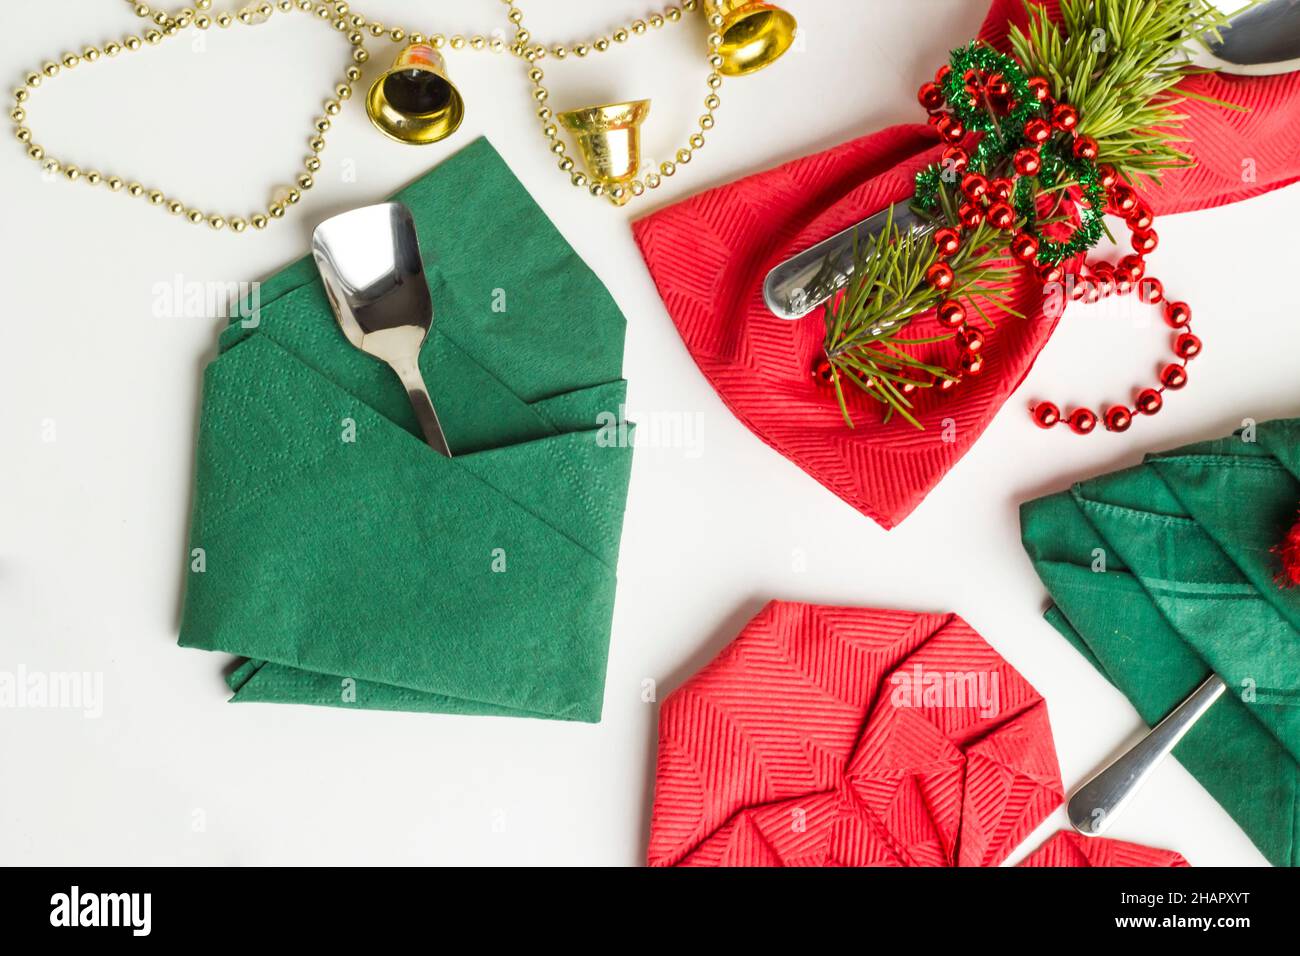 Serviettes de Noël rouges et vertes pliées en différentes formes sur une surface blanche avec ensemble de couverts, ronds de serviettes et décorations de noël Banque D'Images